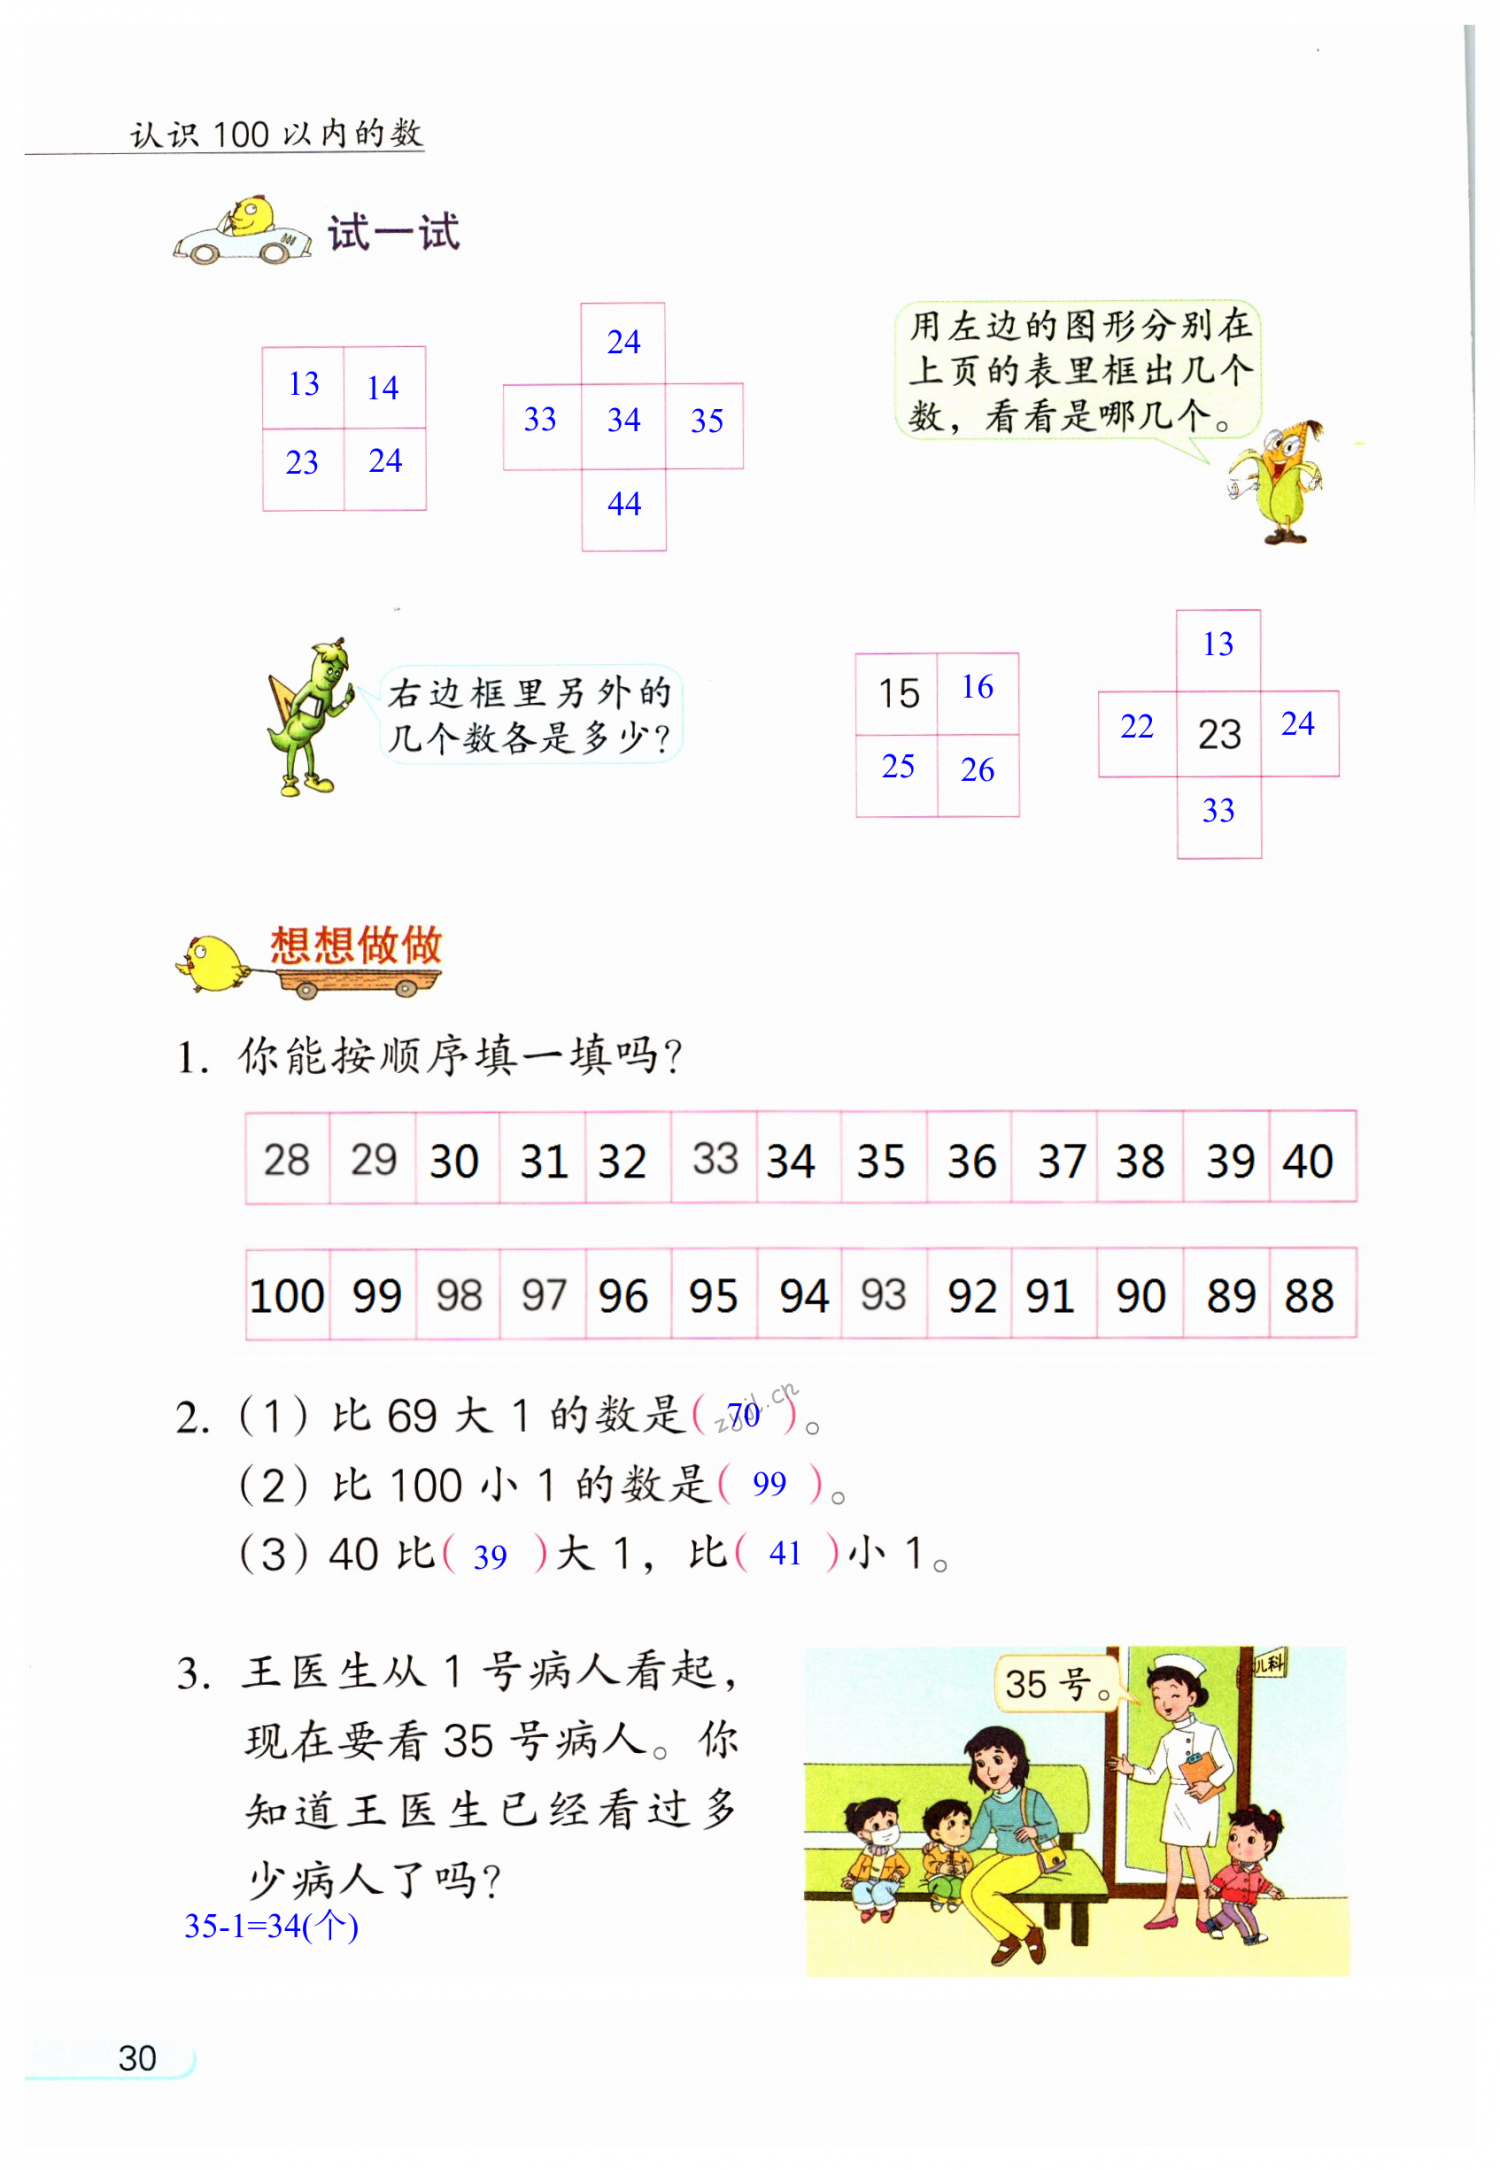 2013浙g35图集第30页图片